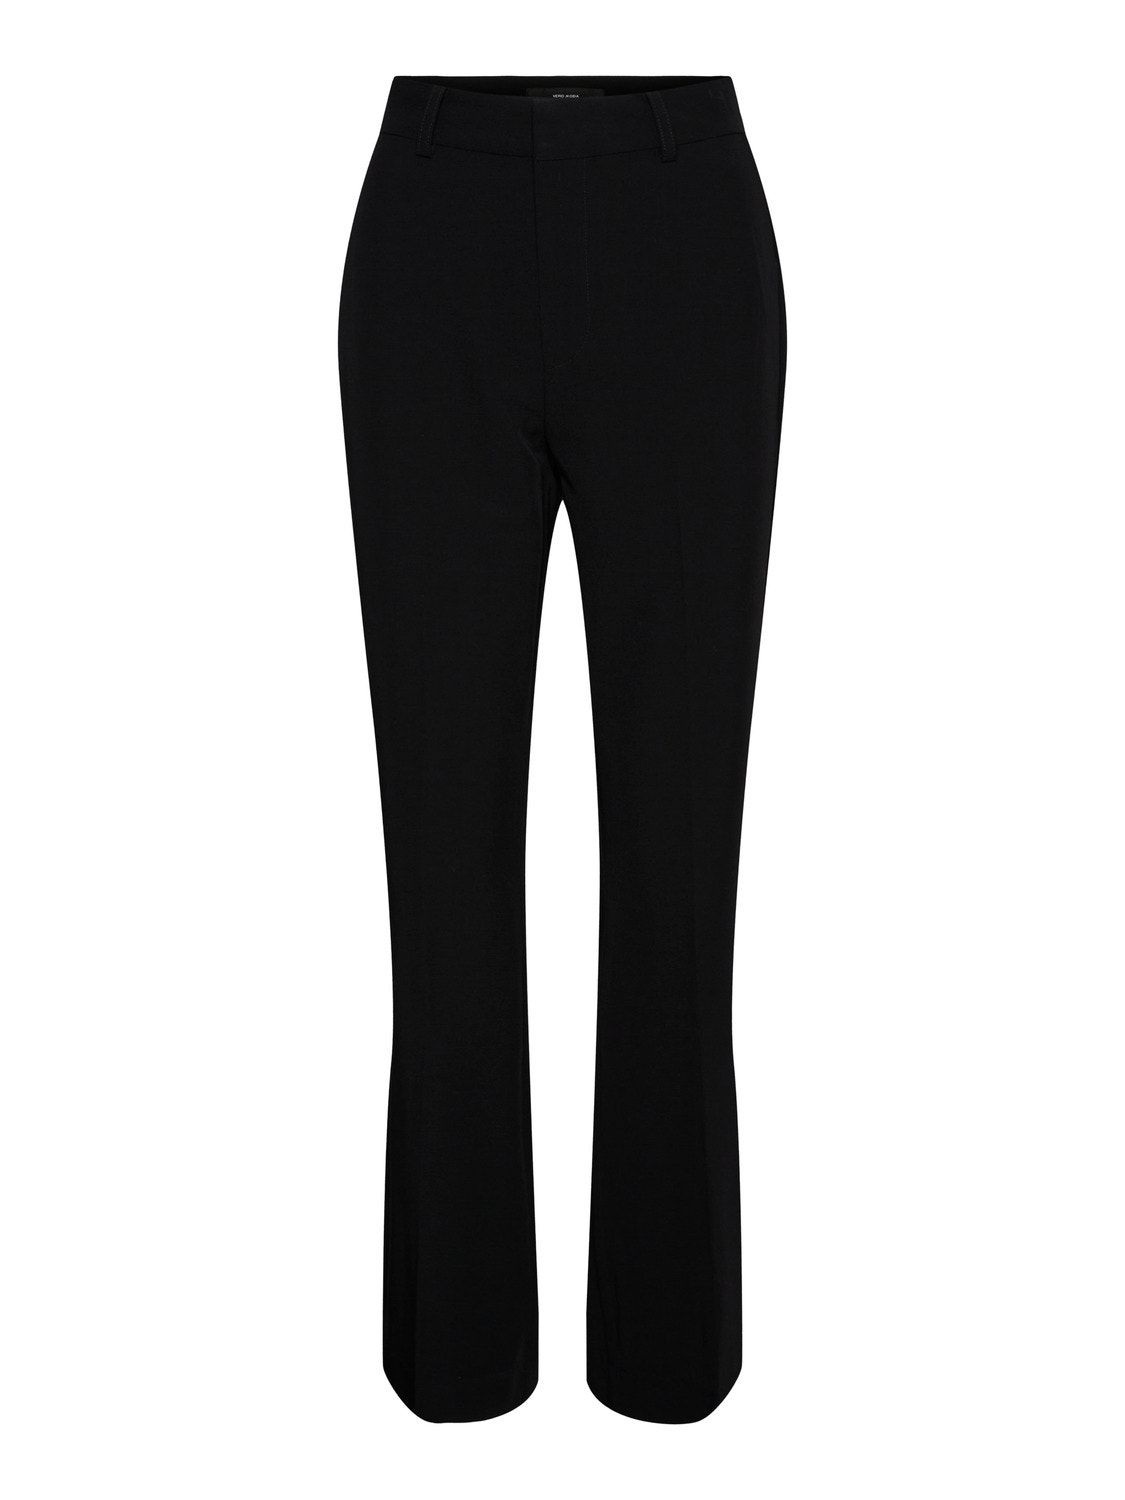 Vero Moda VMALIA Trousers -Black - 10246696